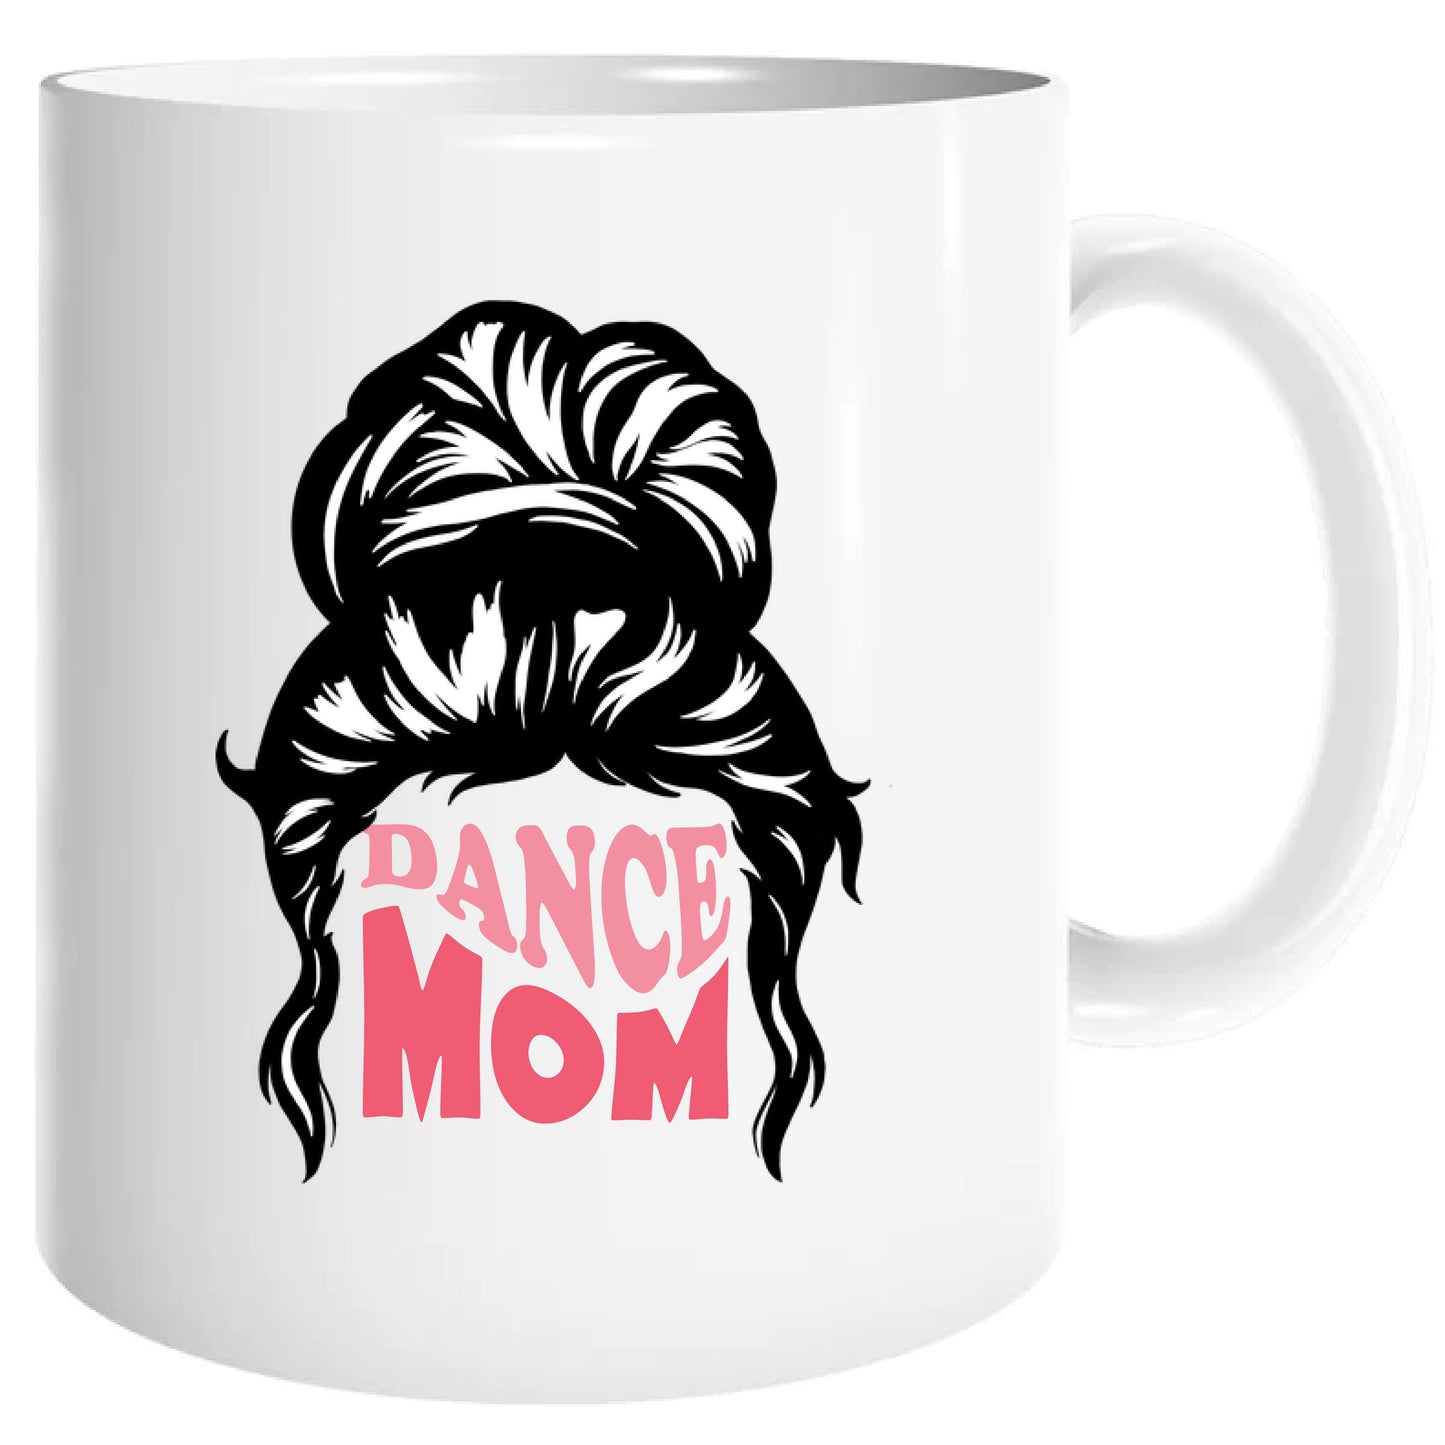 Dance mom mug